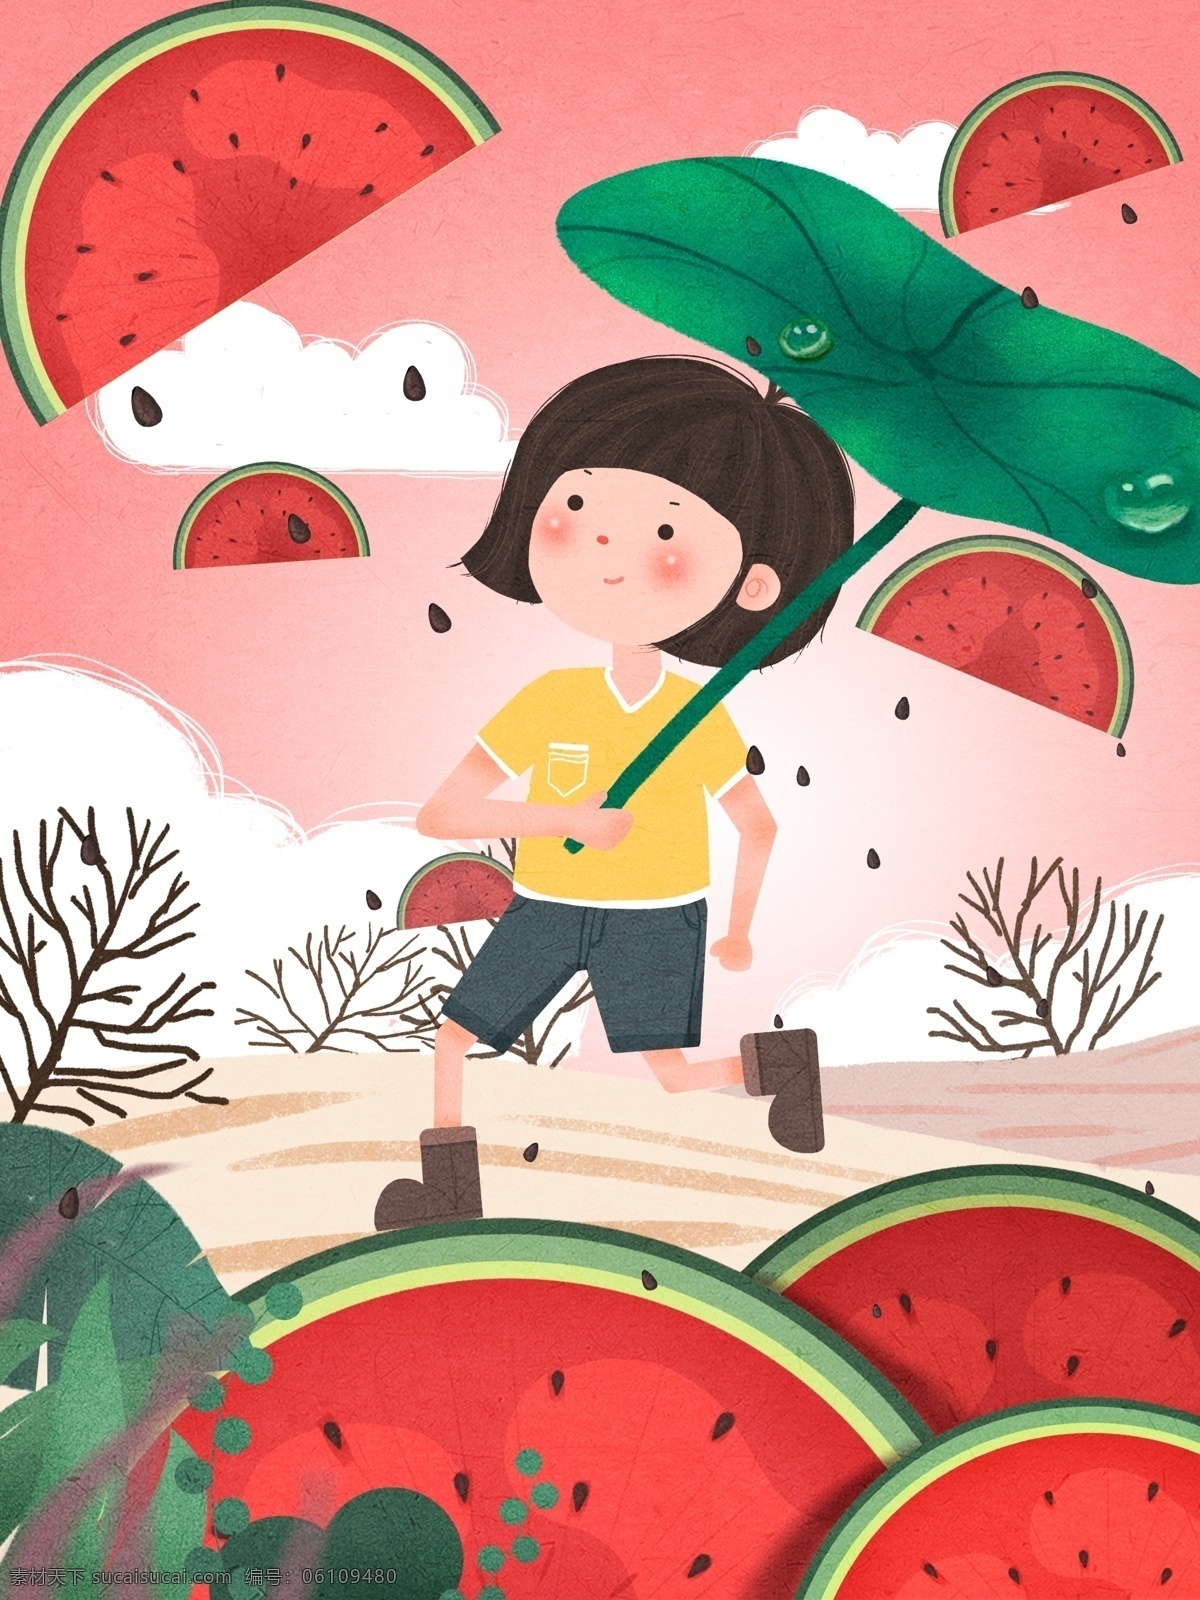 创意 水果 插画 西瓜 小女孩 打着 伞 奔跑 水果插画 荷叶